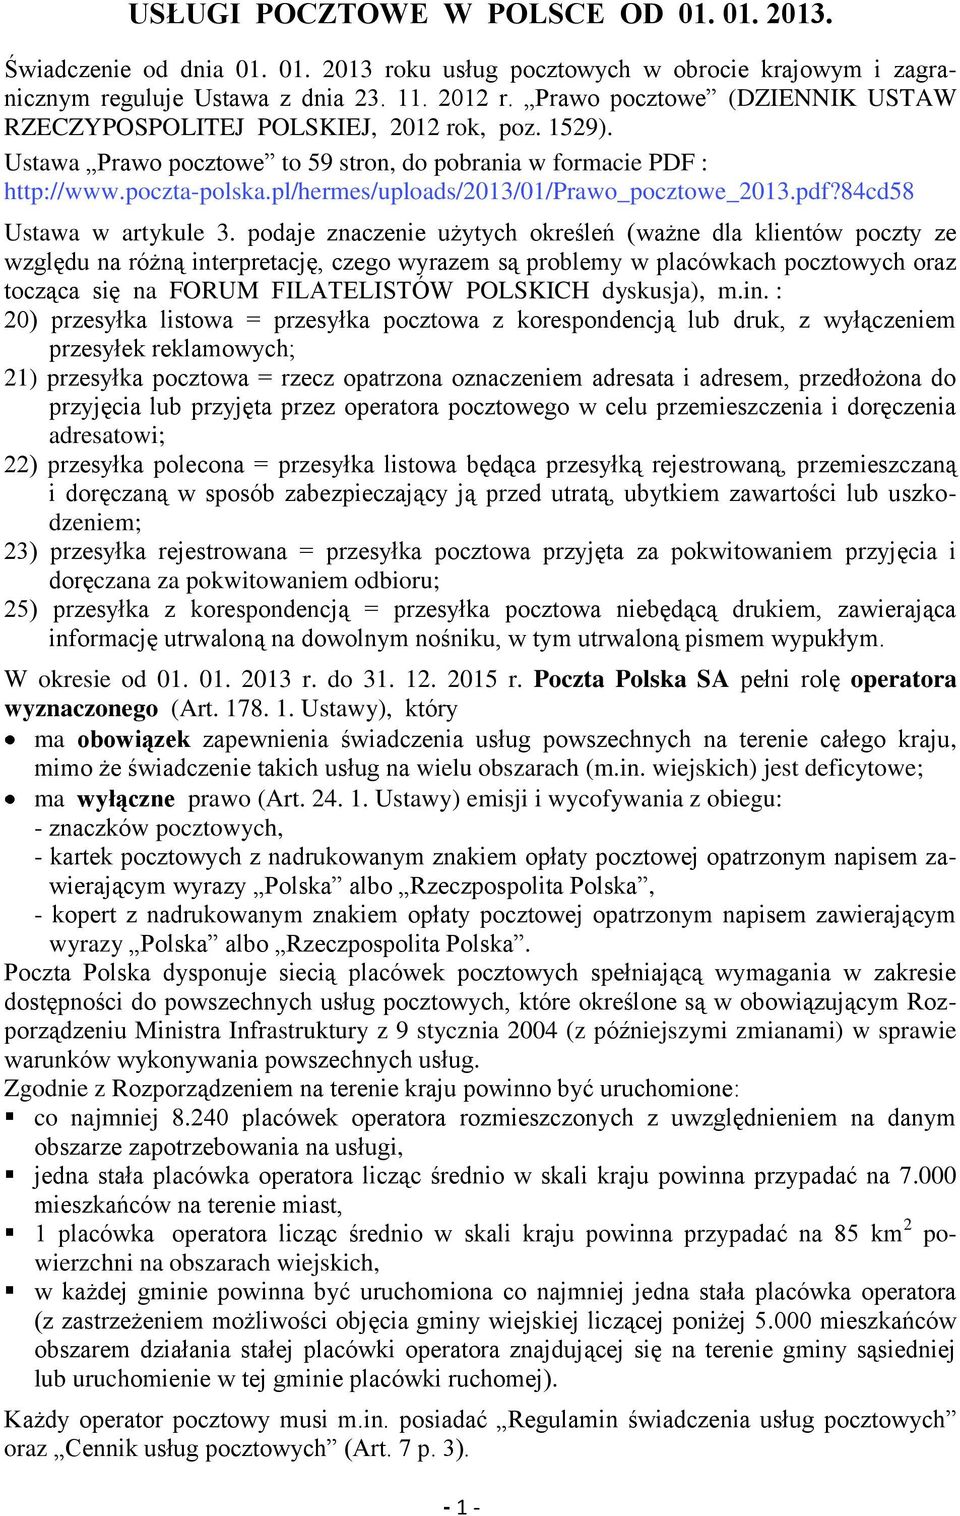 pl/hermes/uploads/2013/01/prawo_pocztowe_2013.pdf?84cd58 Ustawa w artykule 3.